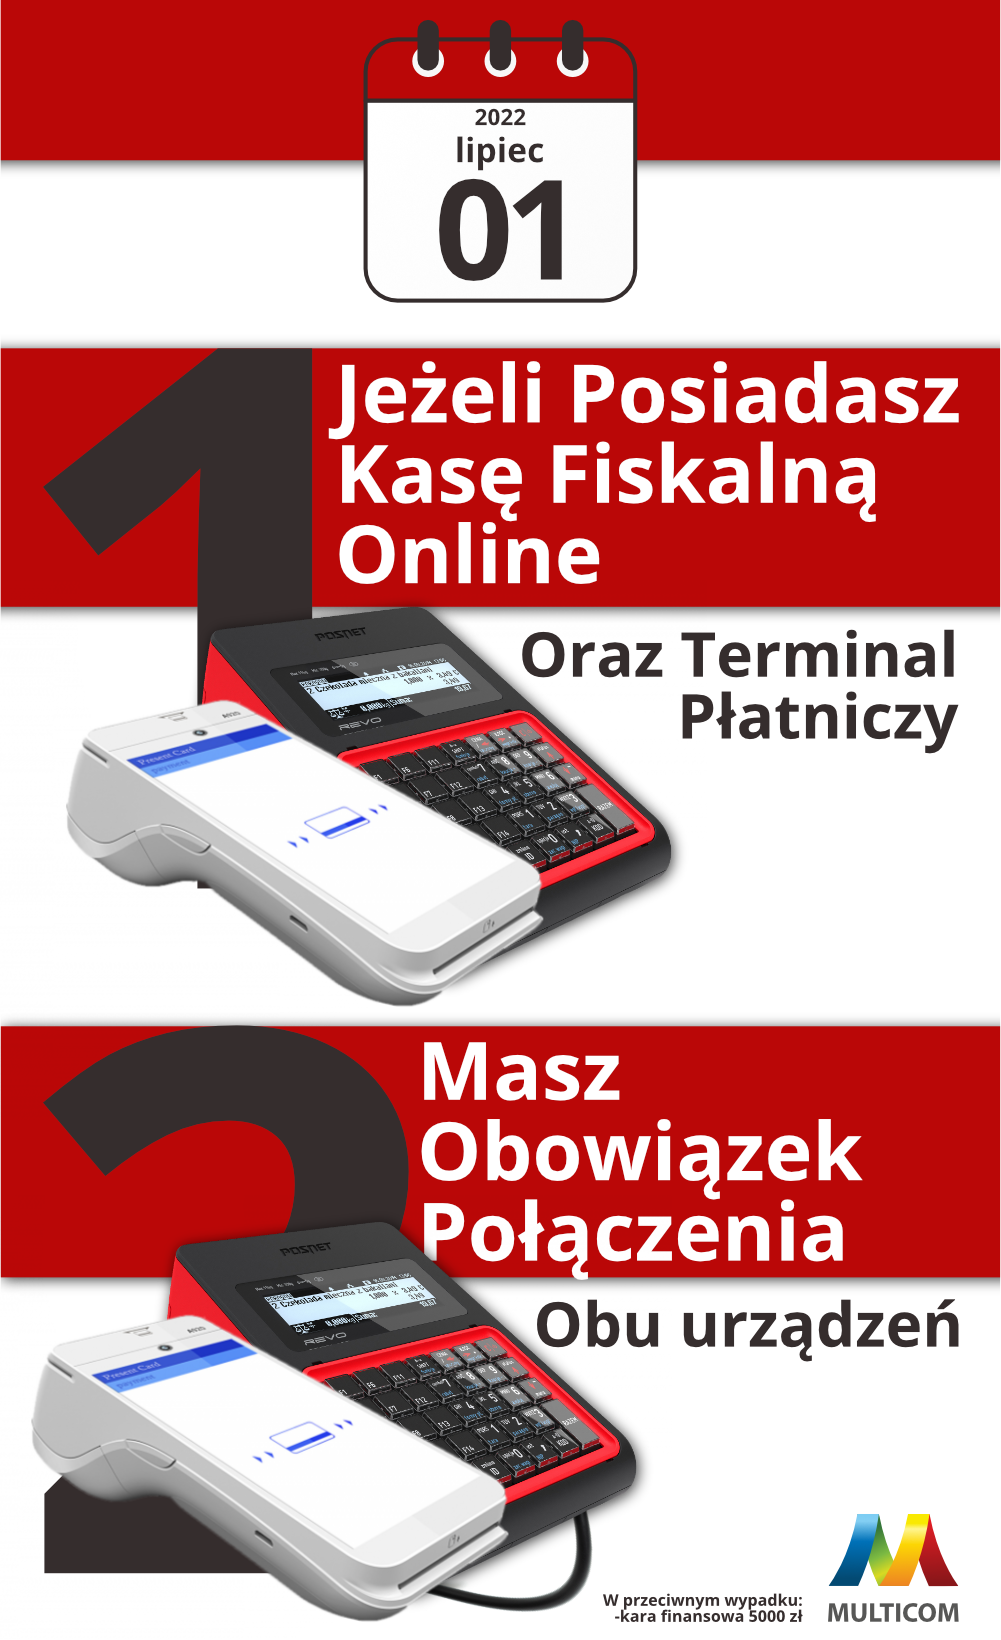 Obowiązkowy terminal w Polskim Ładzie?